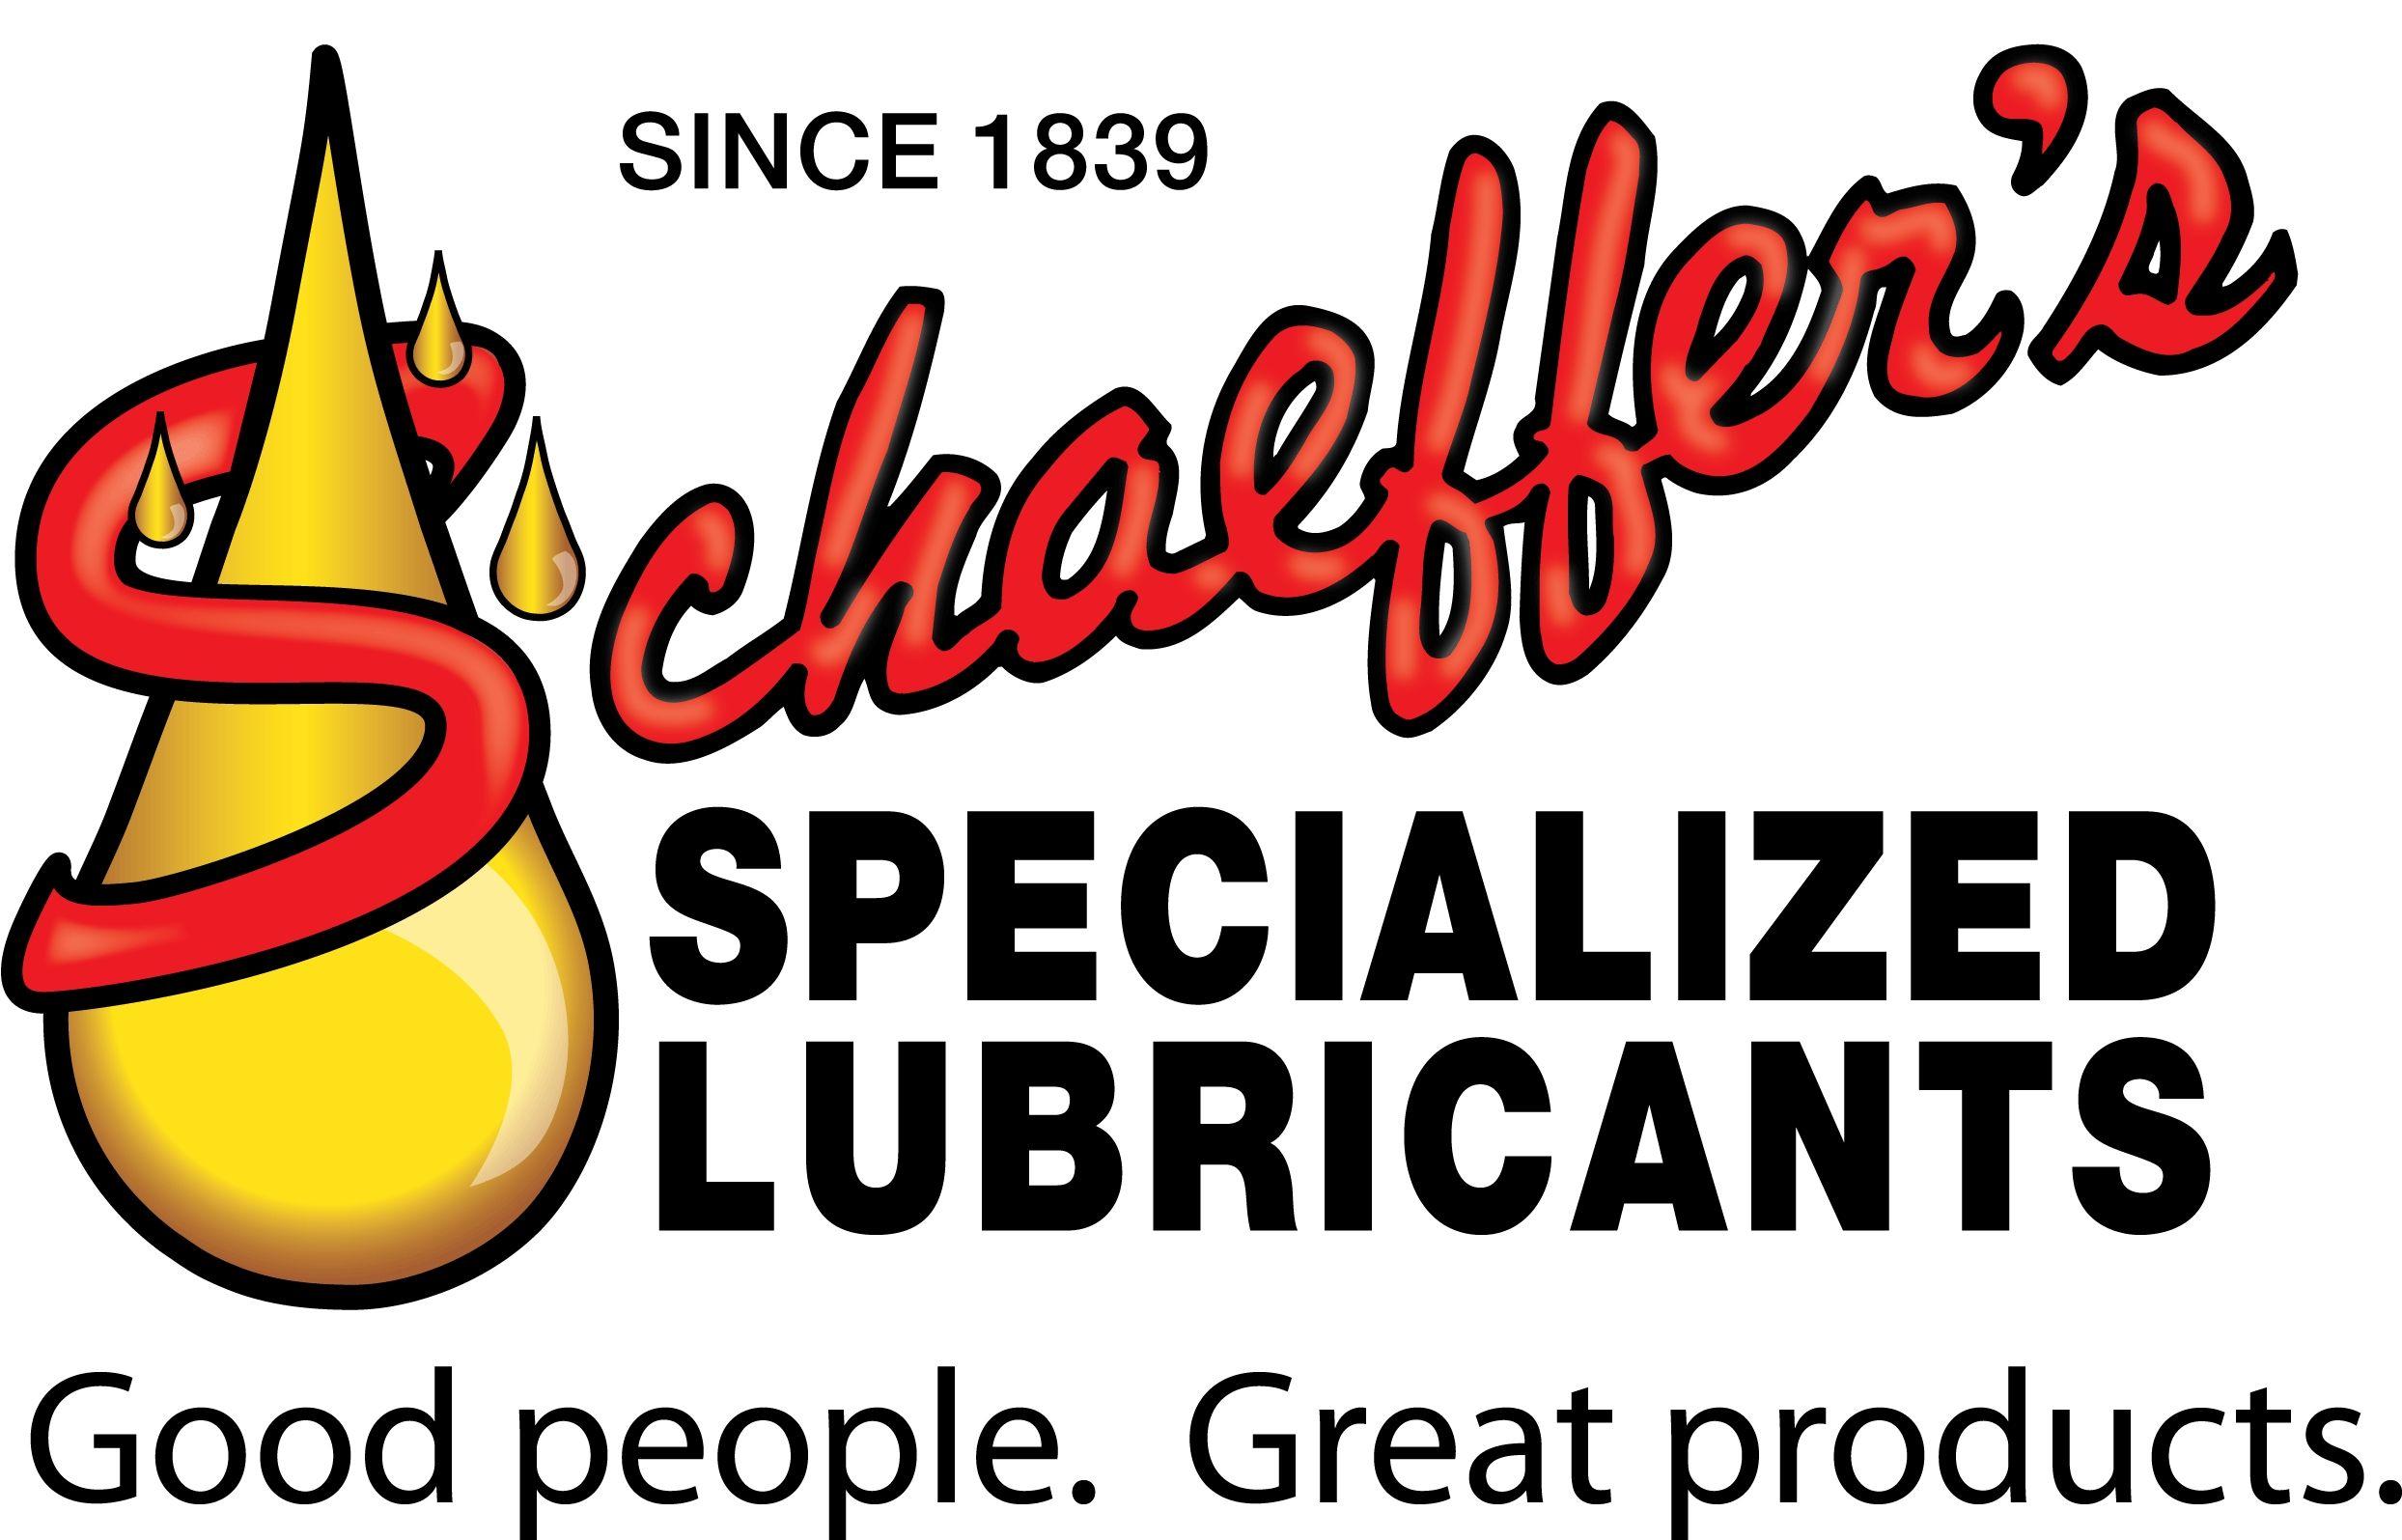 Schaefer Oil Company Logo - Schaeffer Oil Distributors - Welding Supplies from Cross Texas Supply